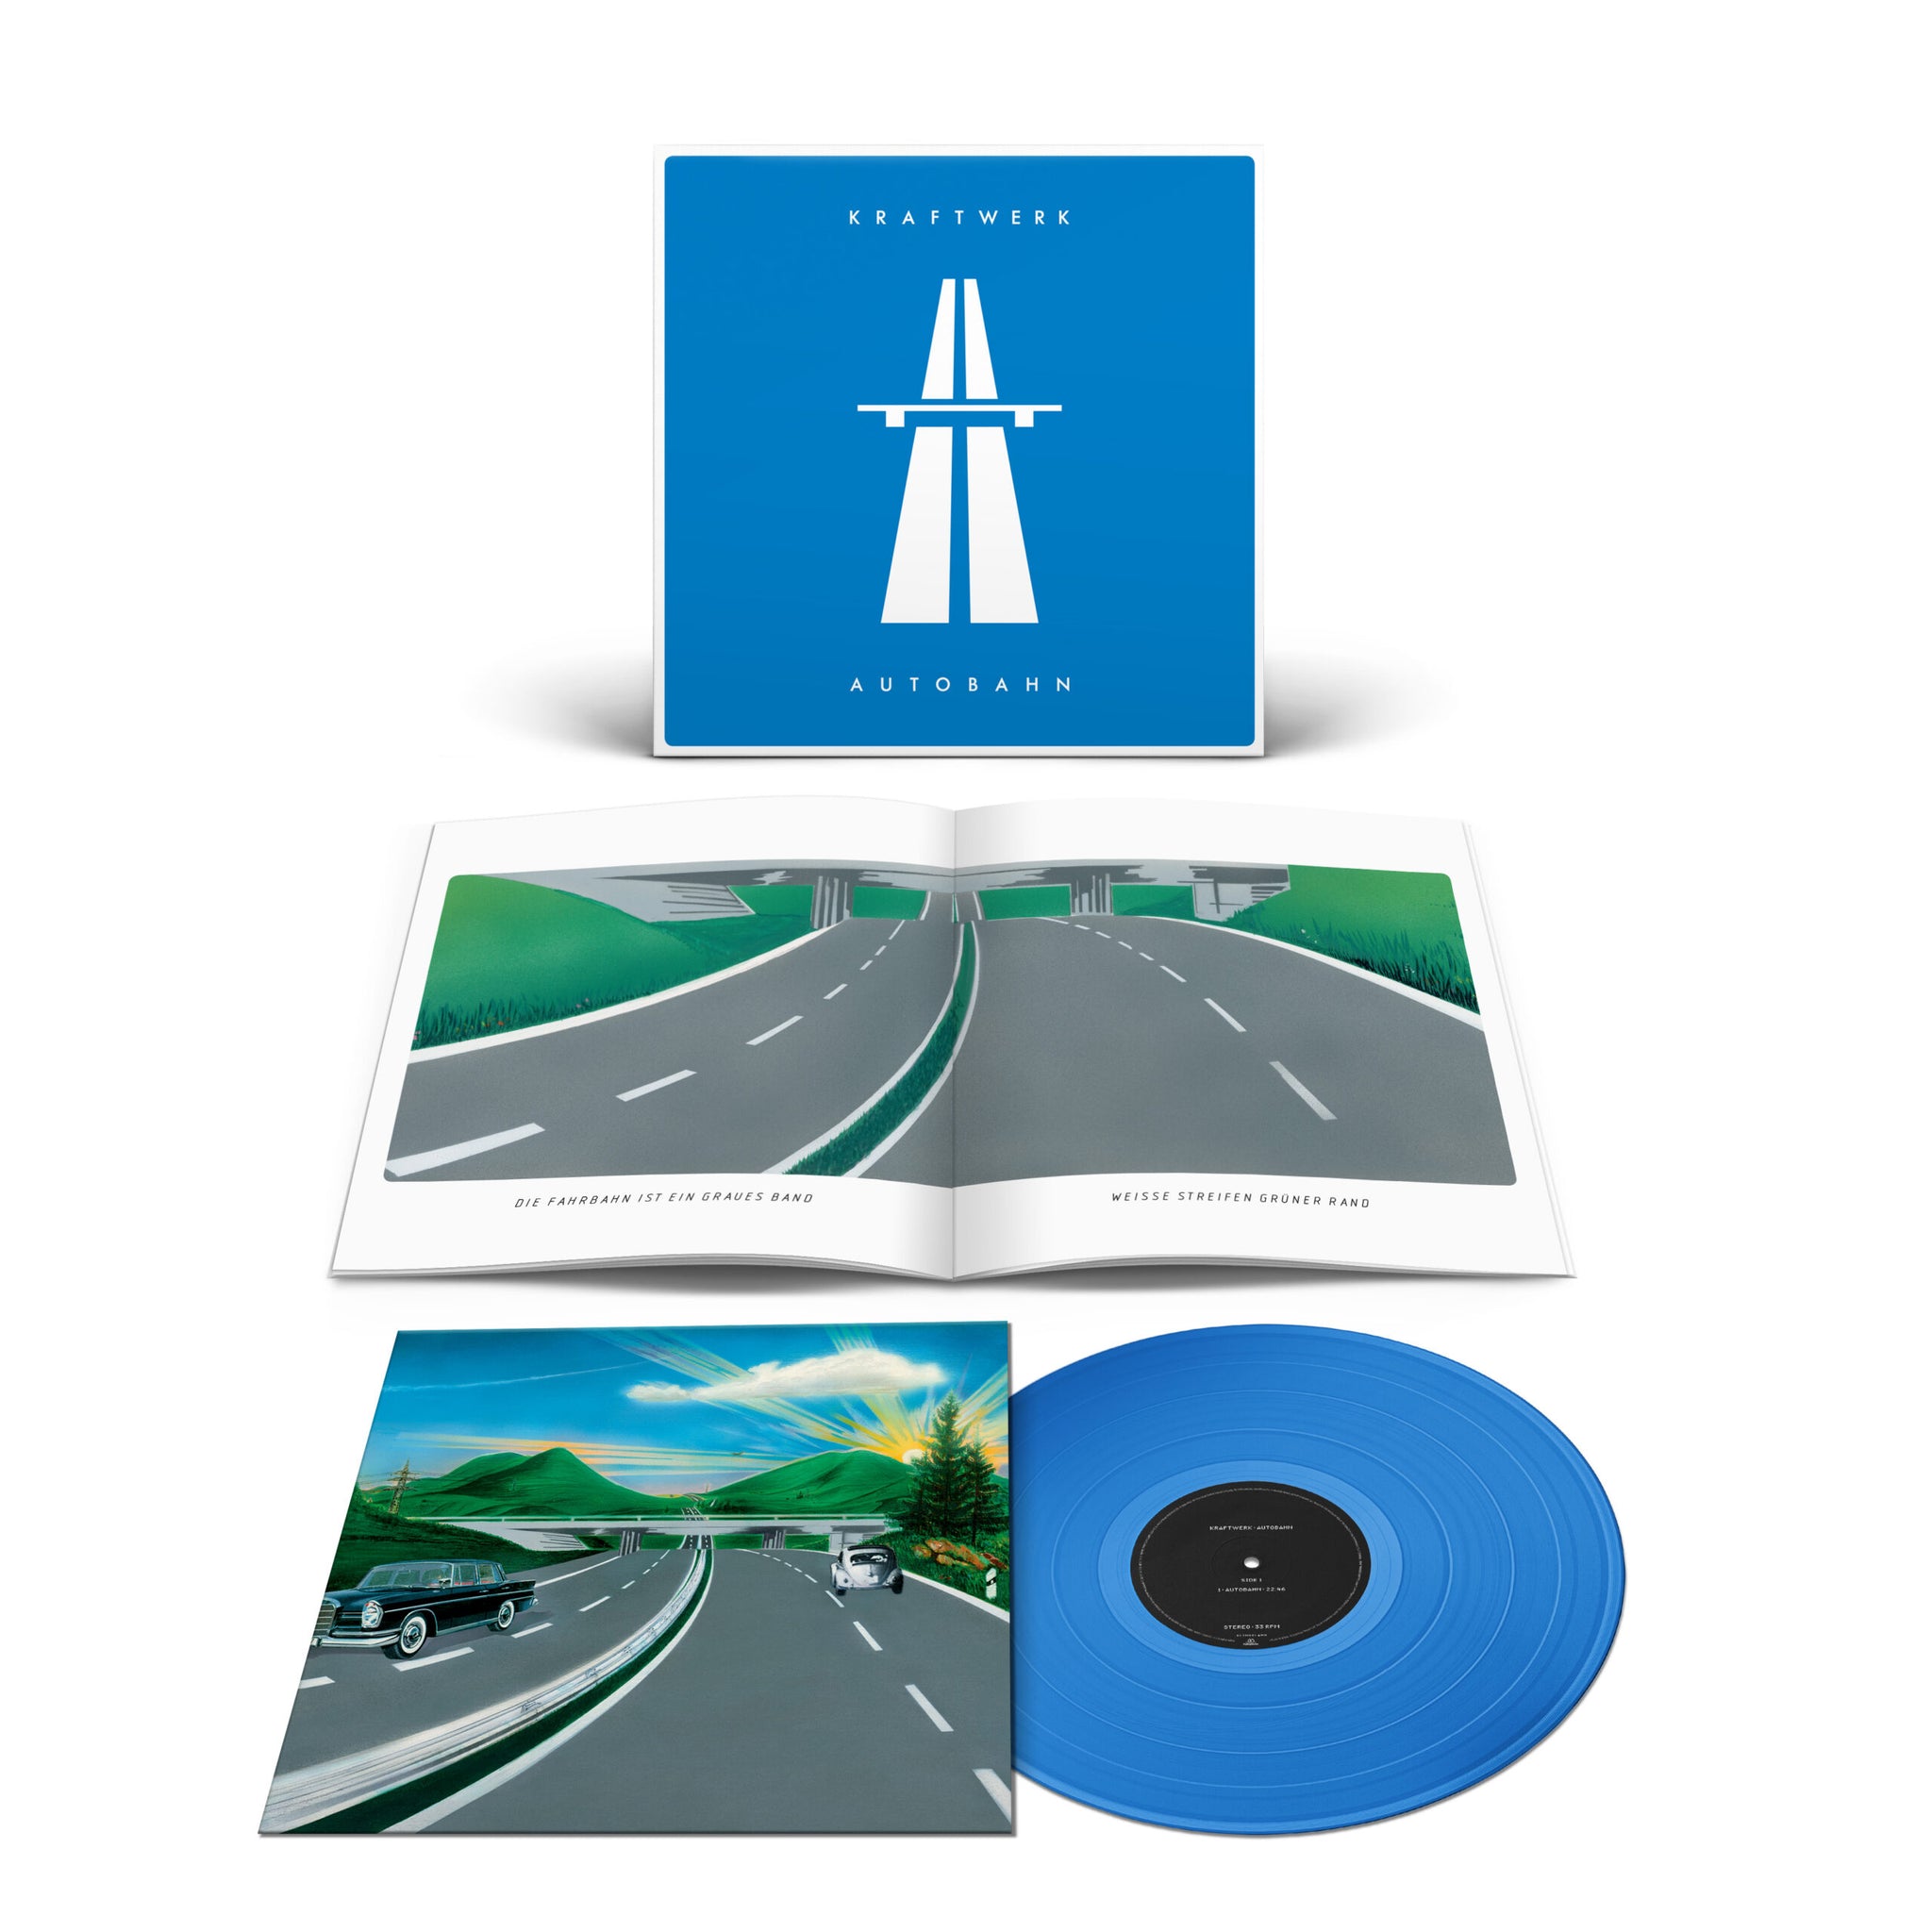 KRAFTWERK – Autobahn – LP – Limited Translucent Blue Vinyl